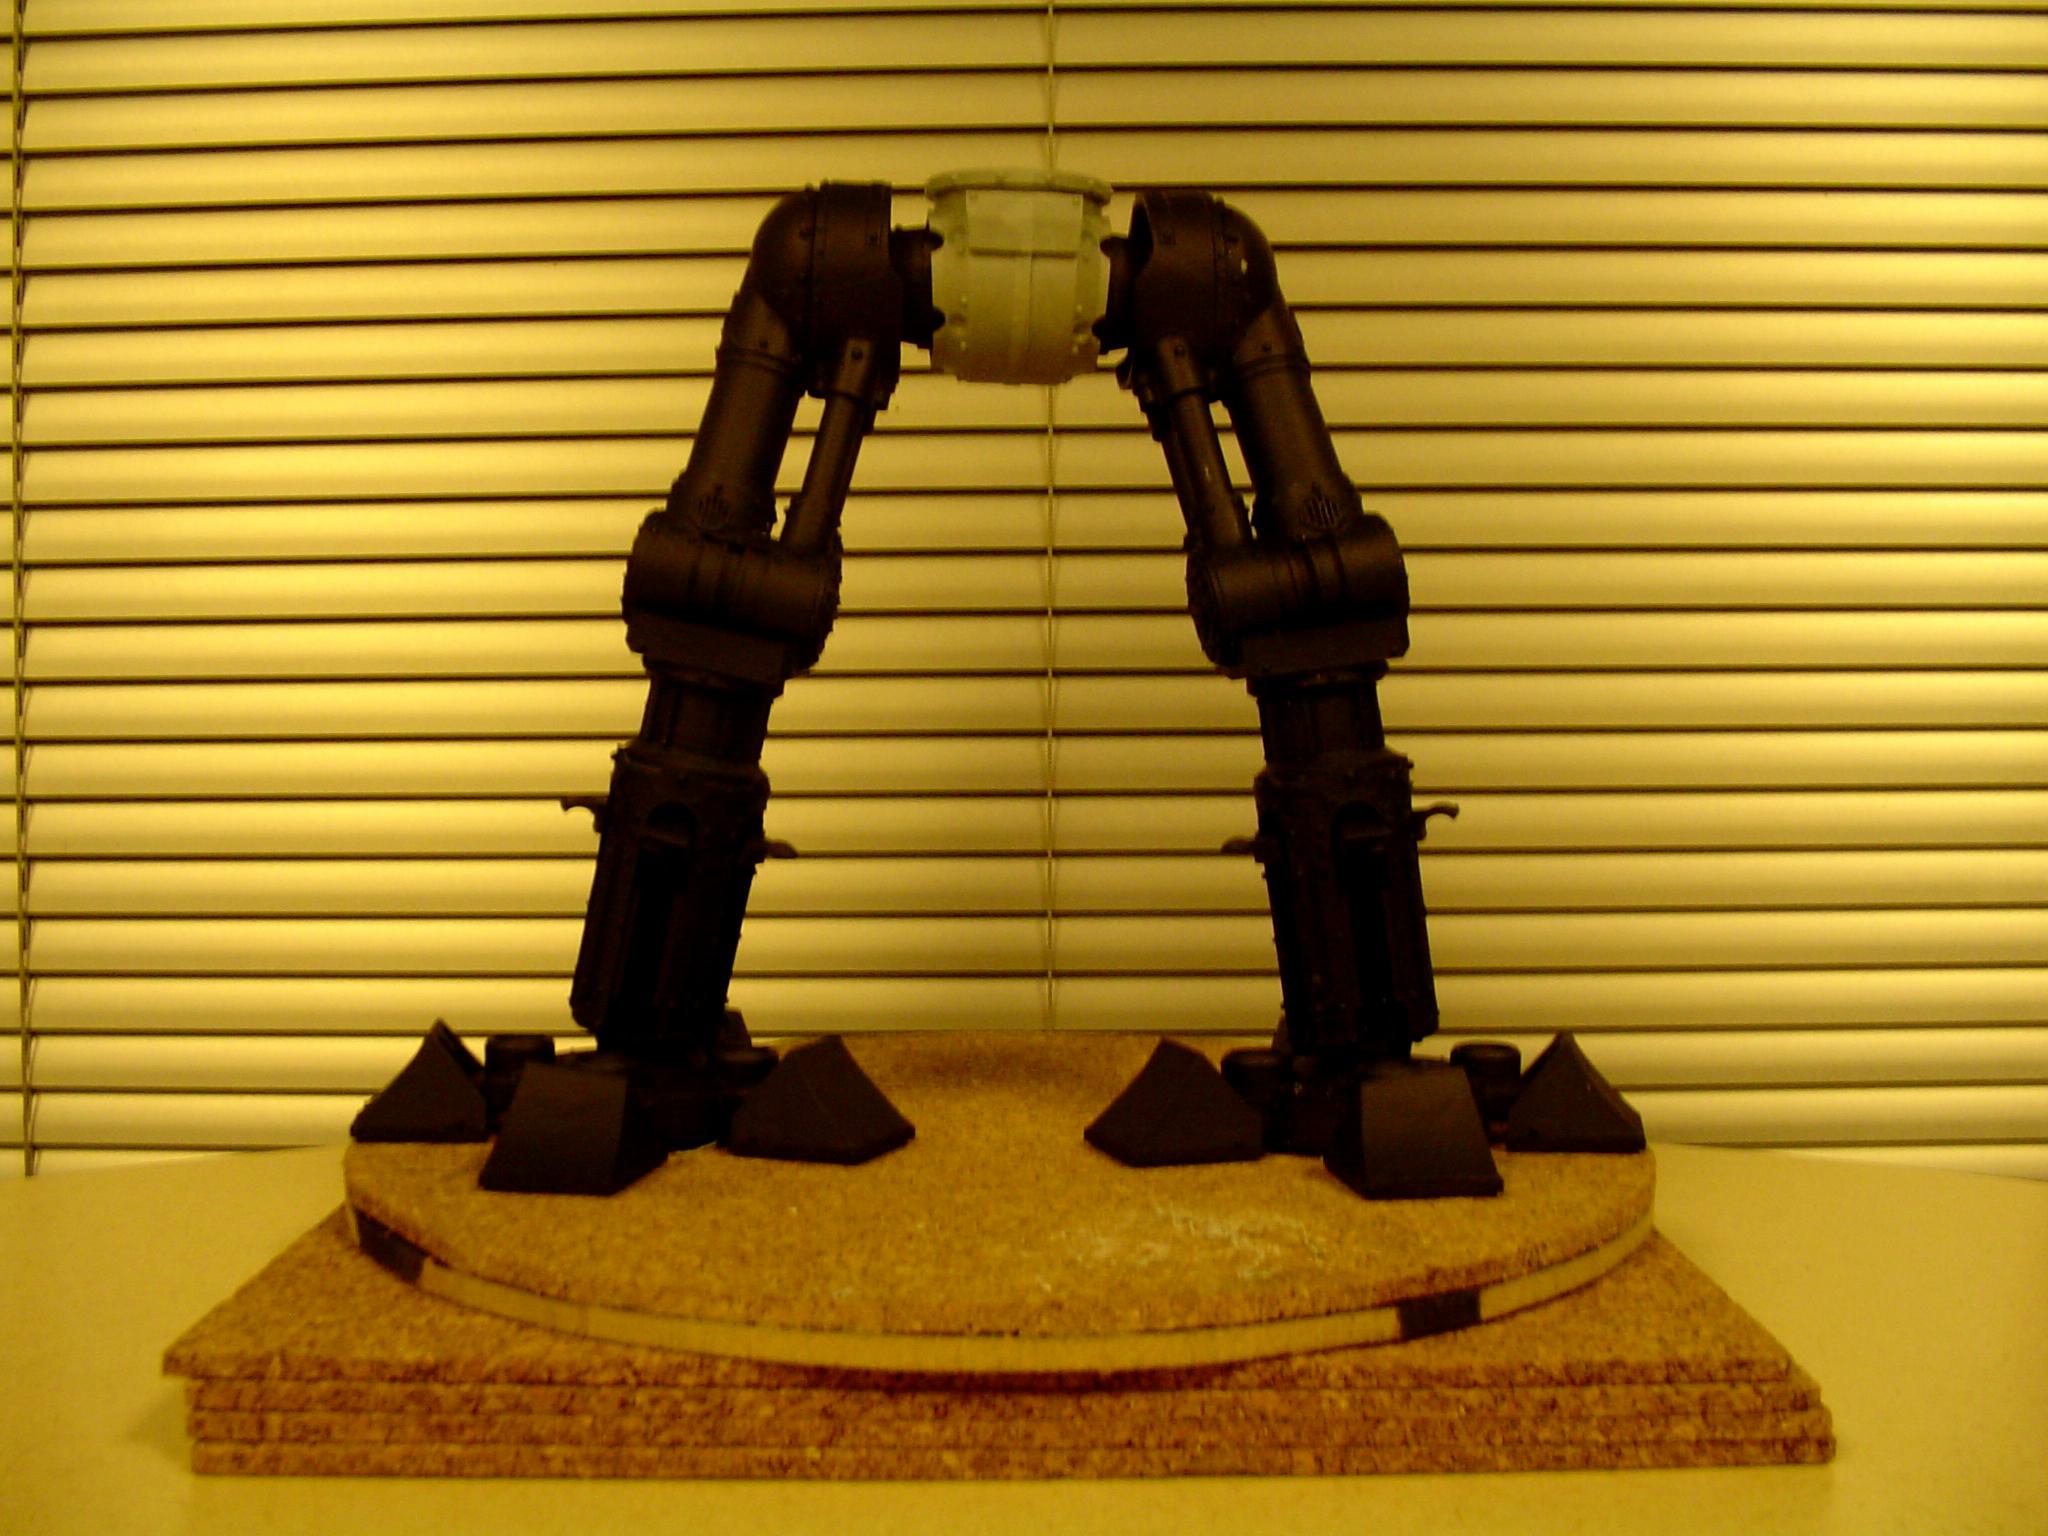 Reaver titan legs and feet